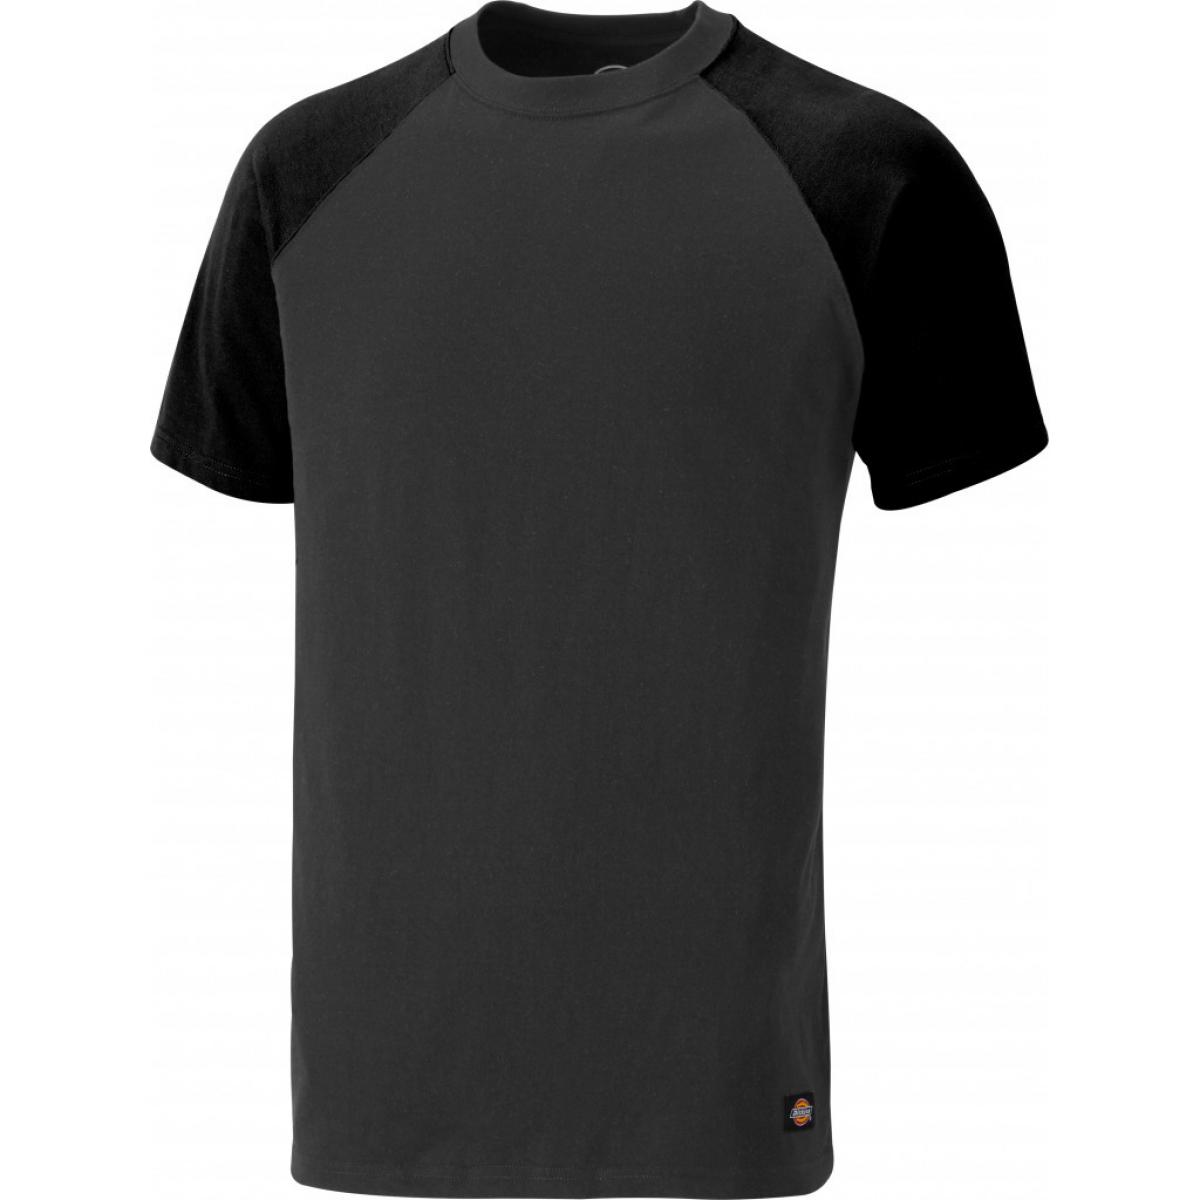 Hersteller: Dickies Herstellernummer: SH2007 Artikelbezeichnung: Zweifarbiges T-Shirt Farbe: Grau/Schwarz